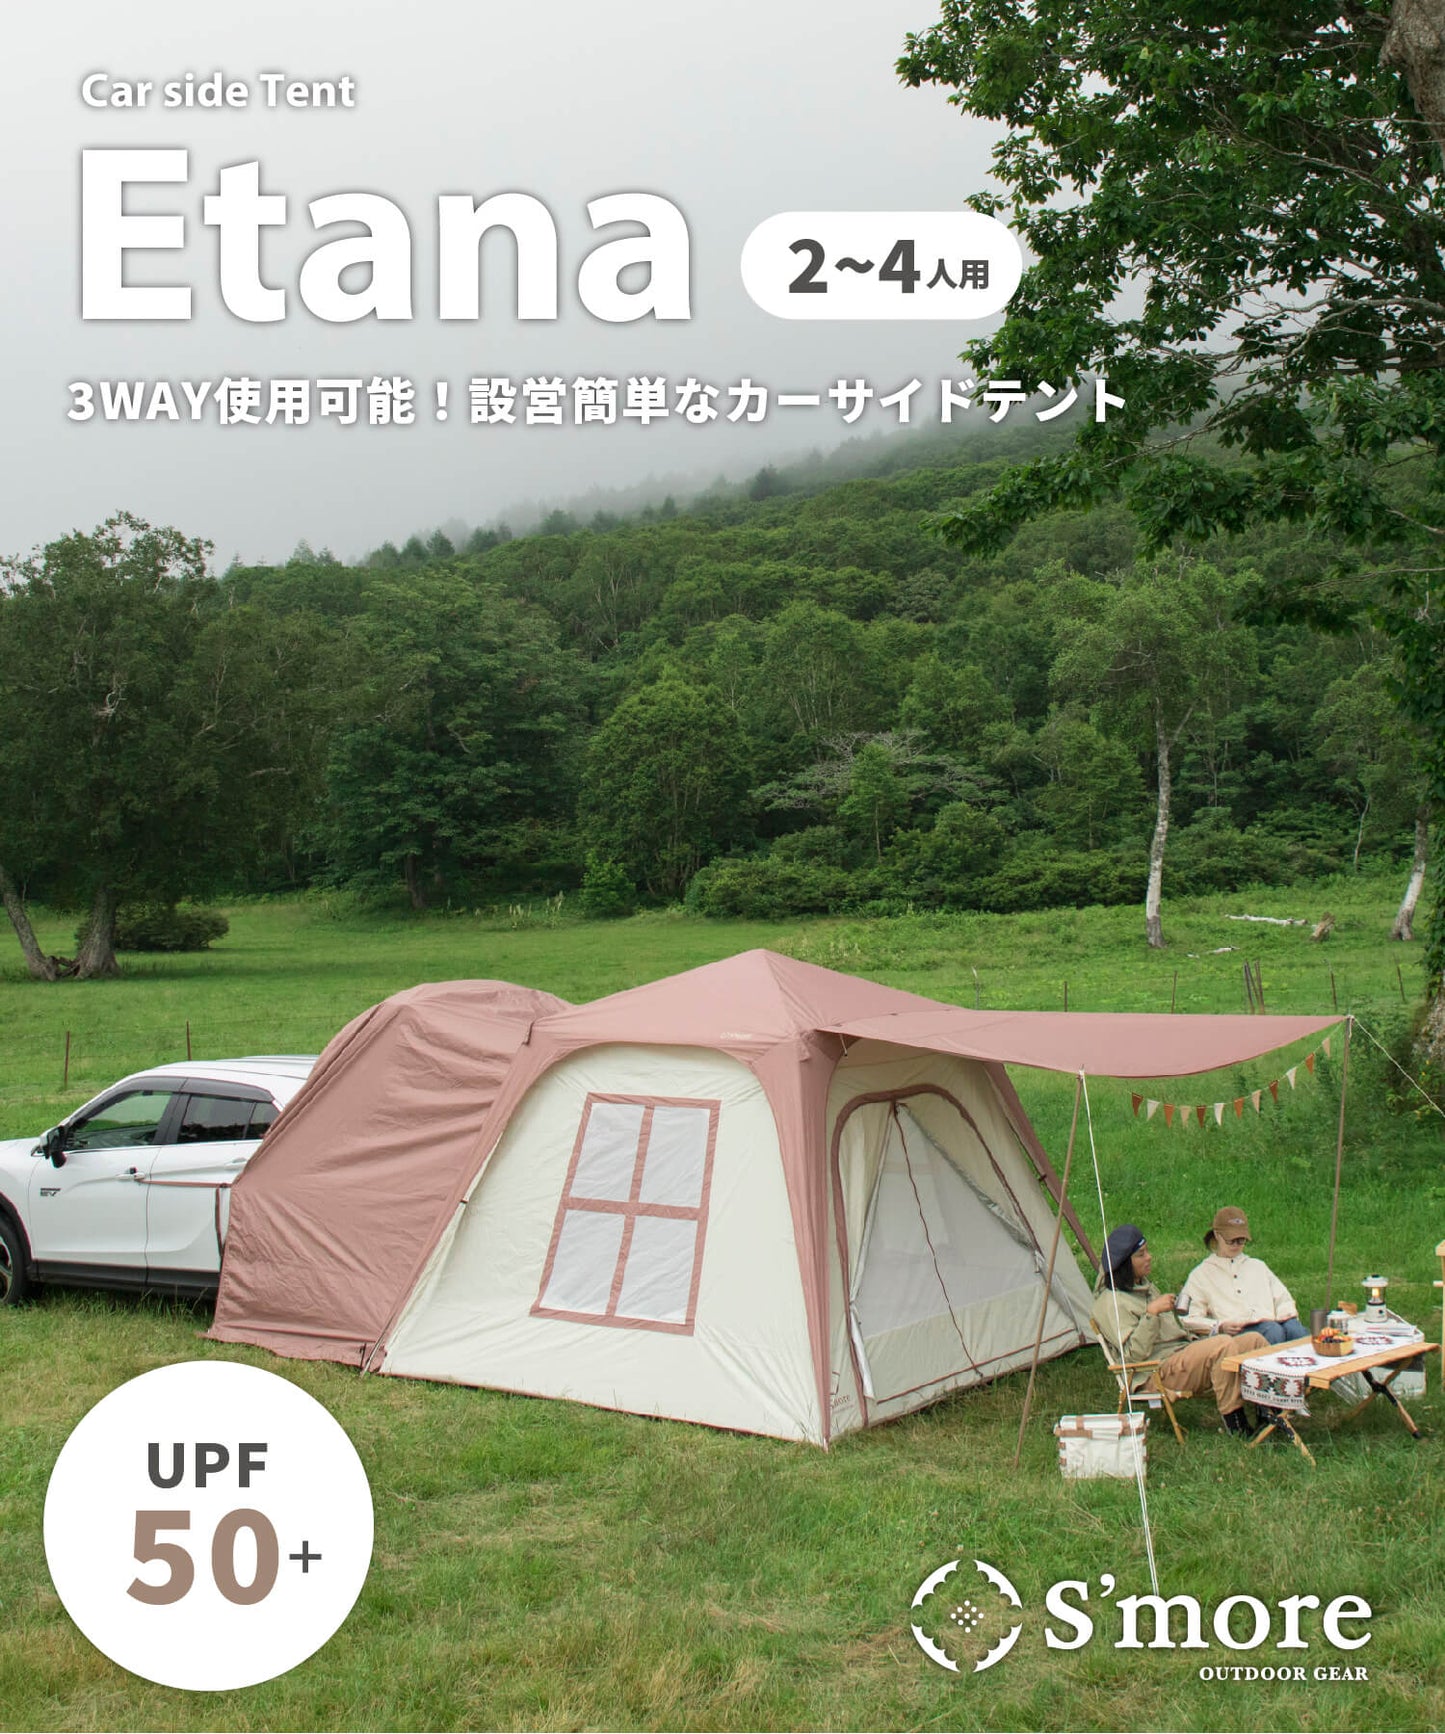 【 Etana 】 カーサイドテント エターナ (別売りインナーマットあり)